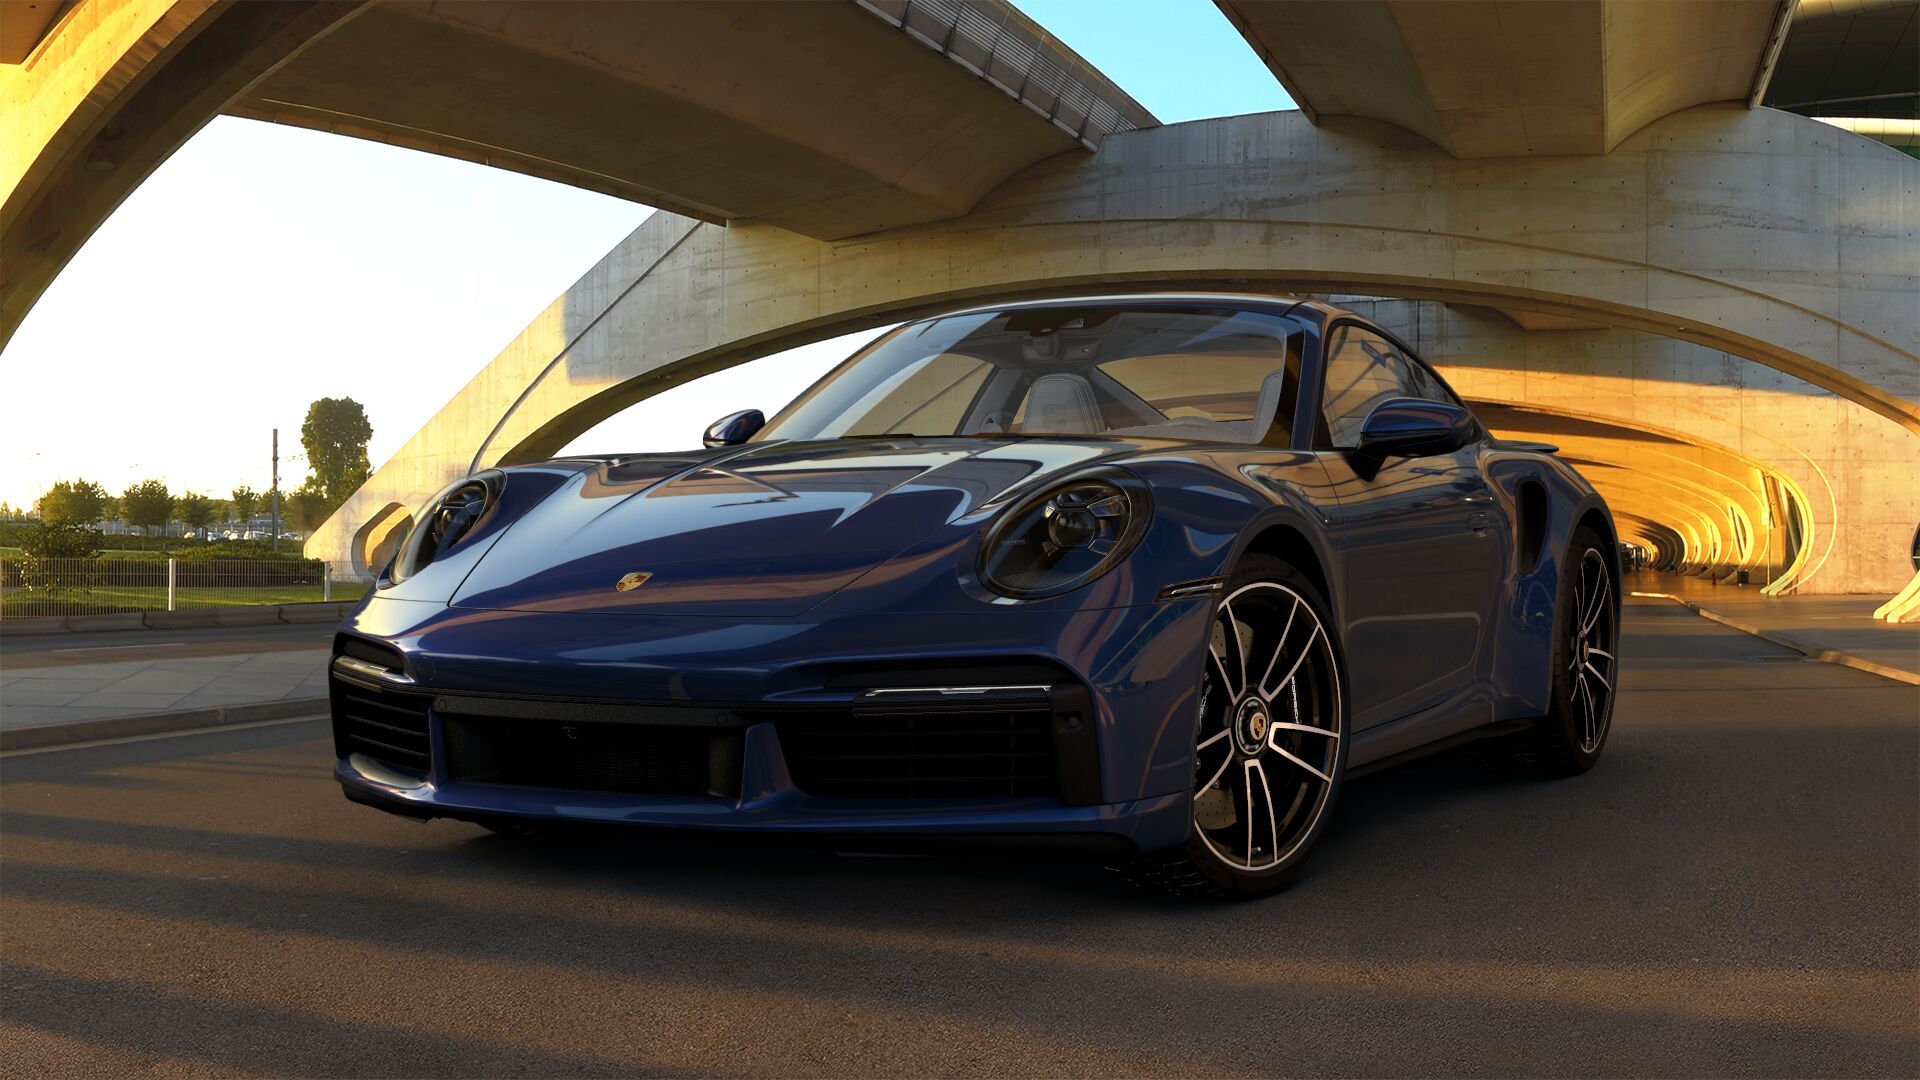 Configure This: Show Us Your Dream 2021 Porsche 911 Turbo S